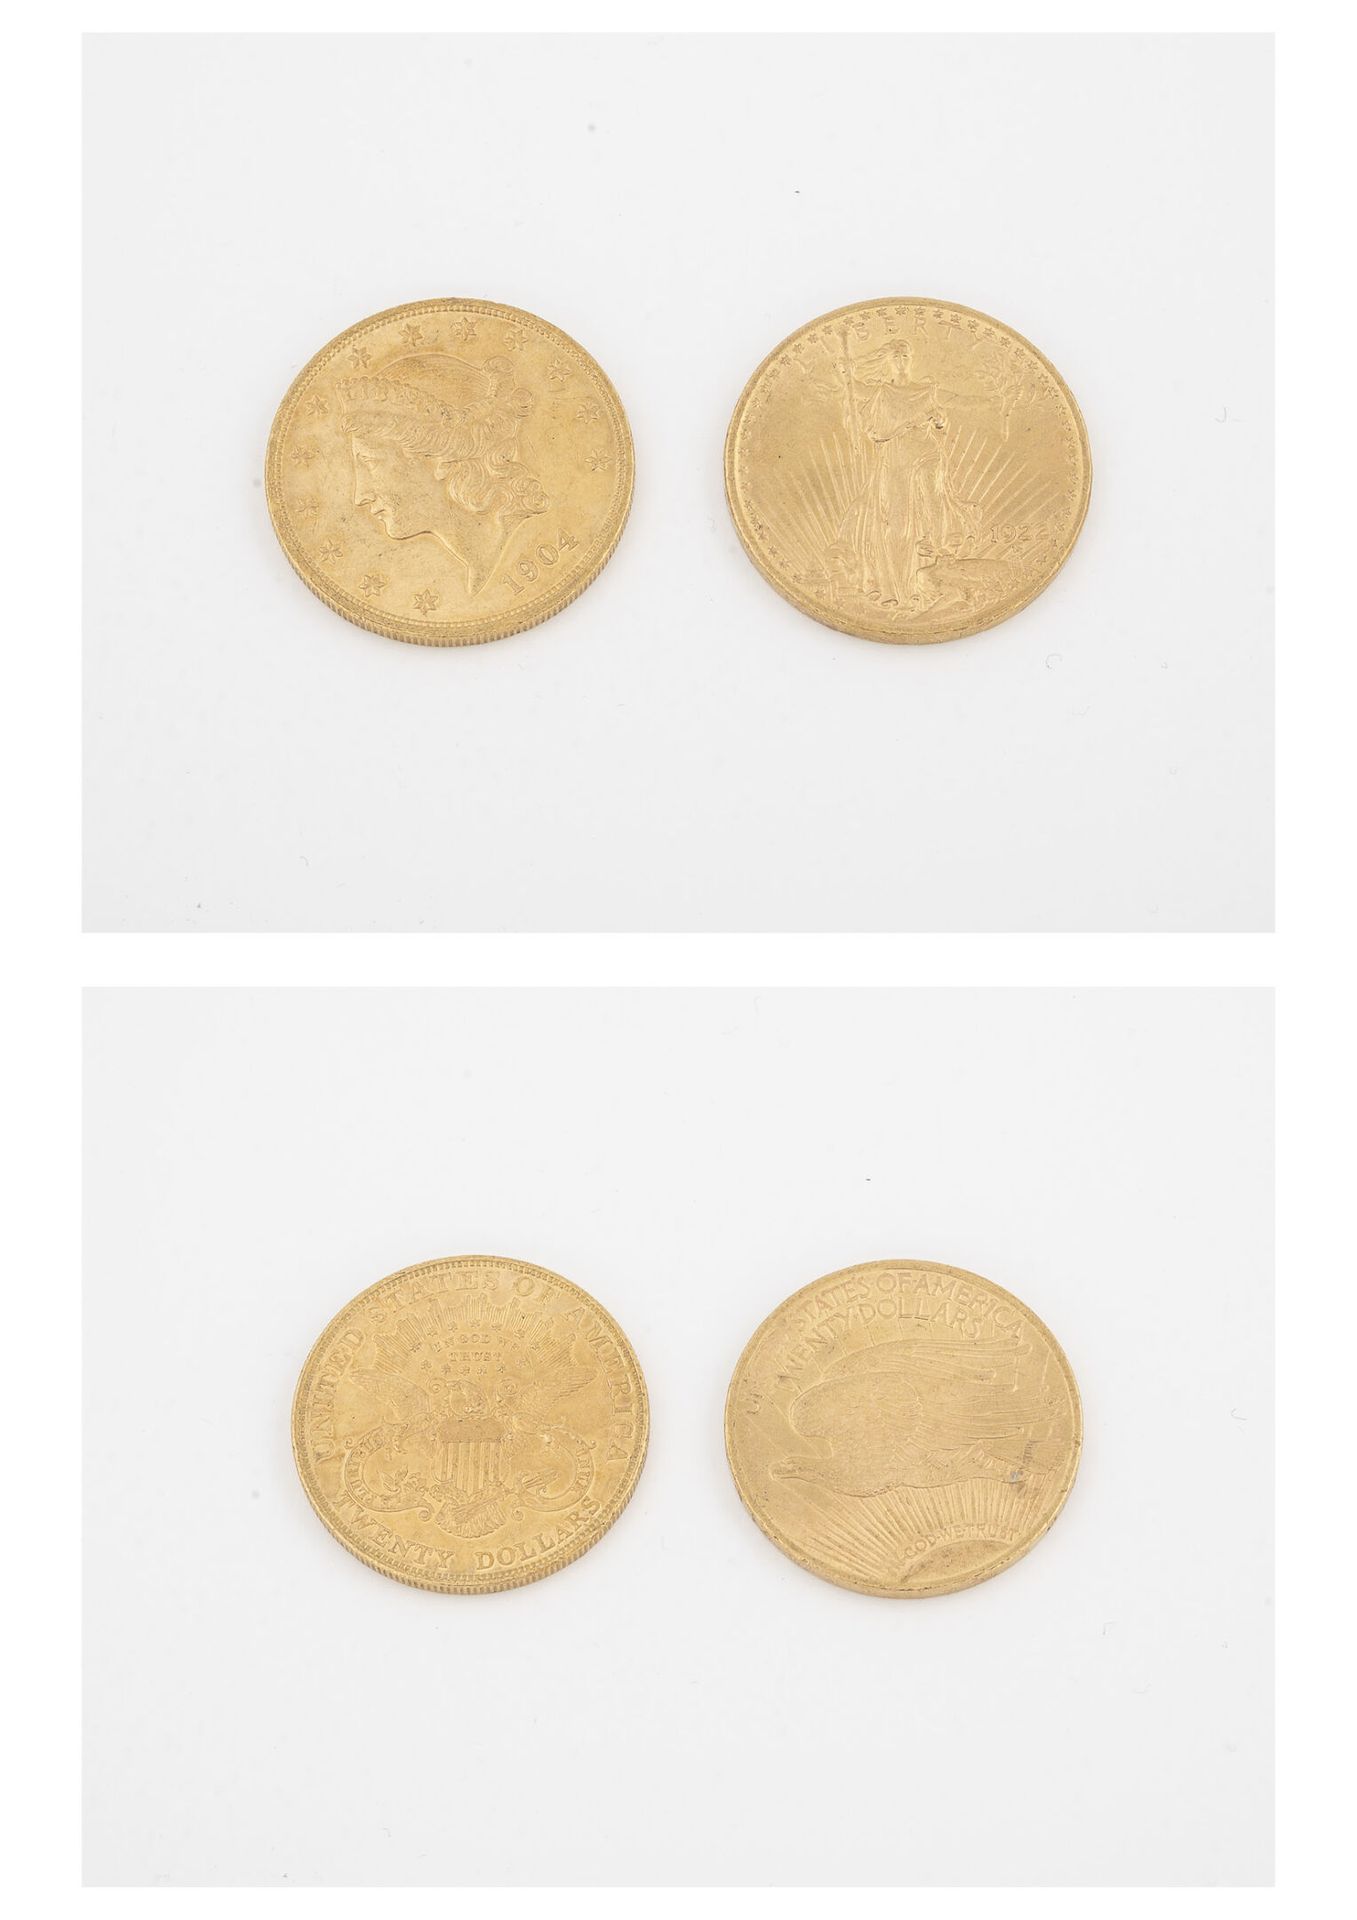 ÉTATS UNIS Deux pièces de 20 dollars or, 1904 et 1922. 

Poids total : 66.8 g. 
&hellip;